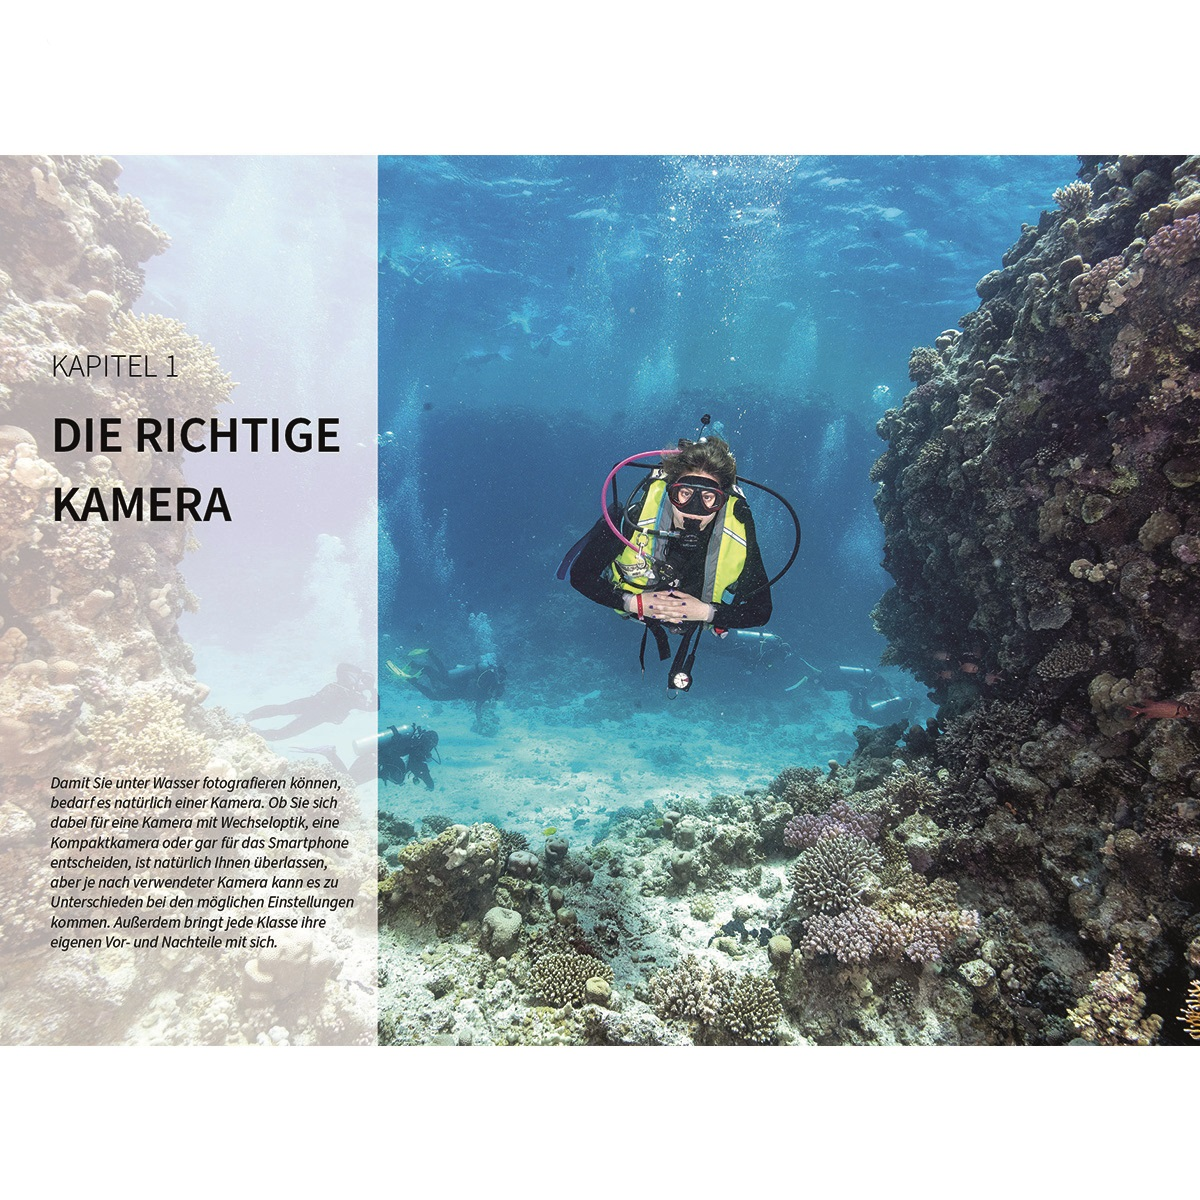 Fotoschule Unterwasser - Die mit Tiefgang